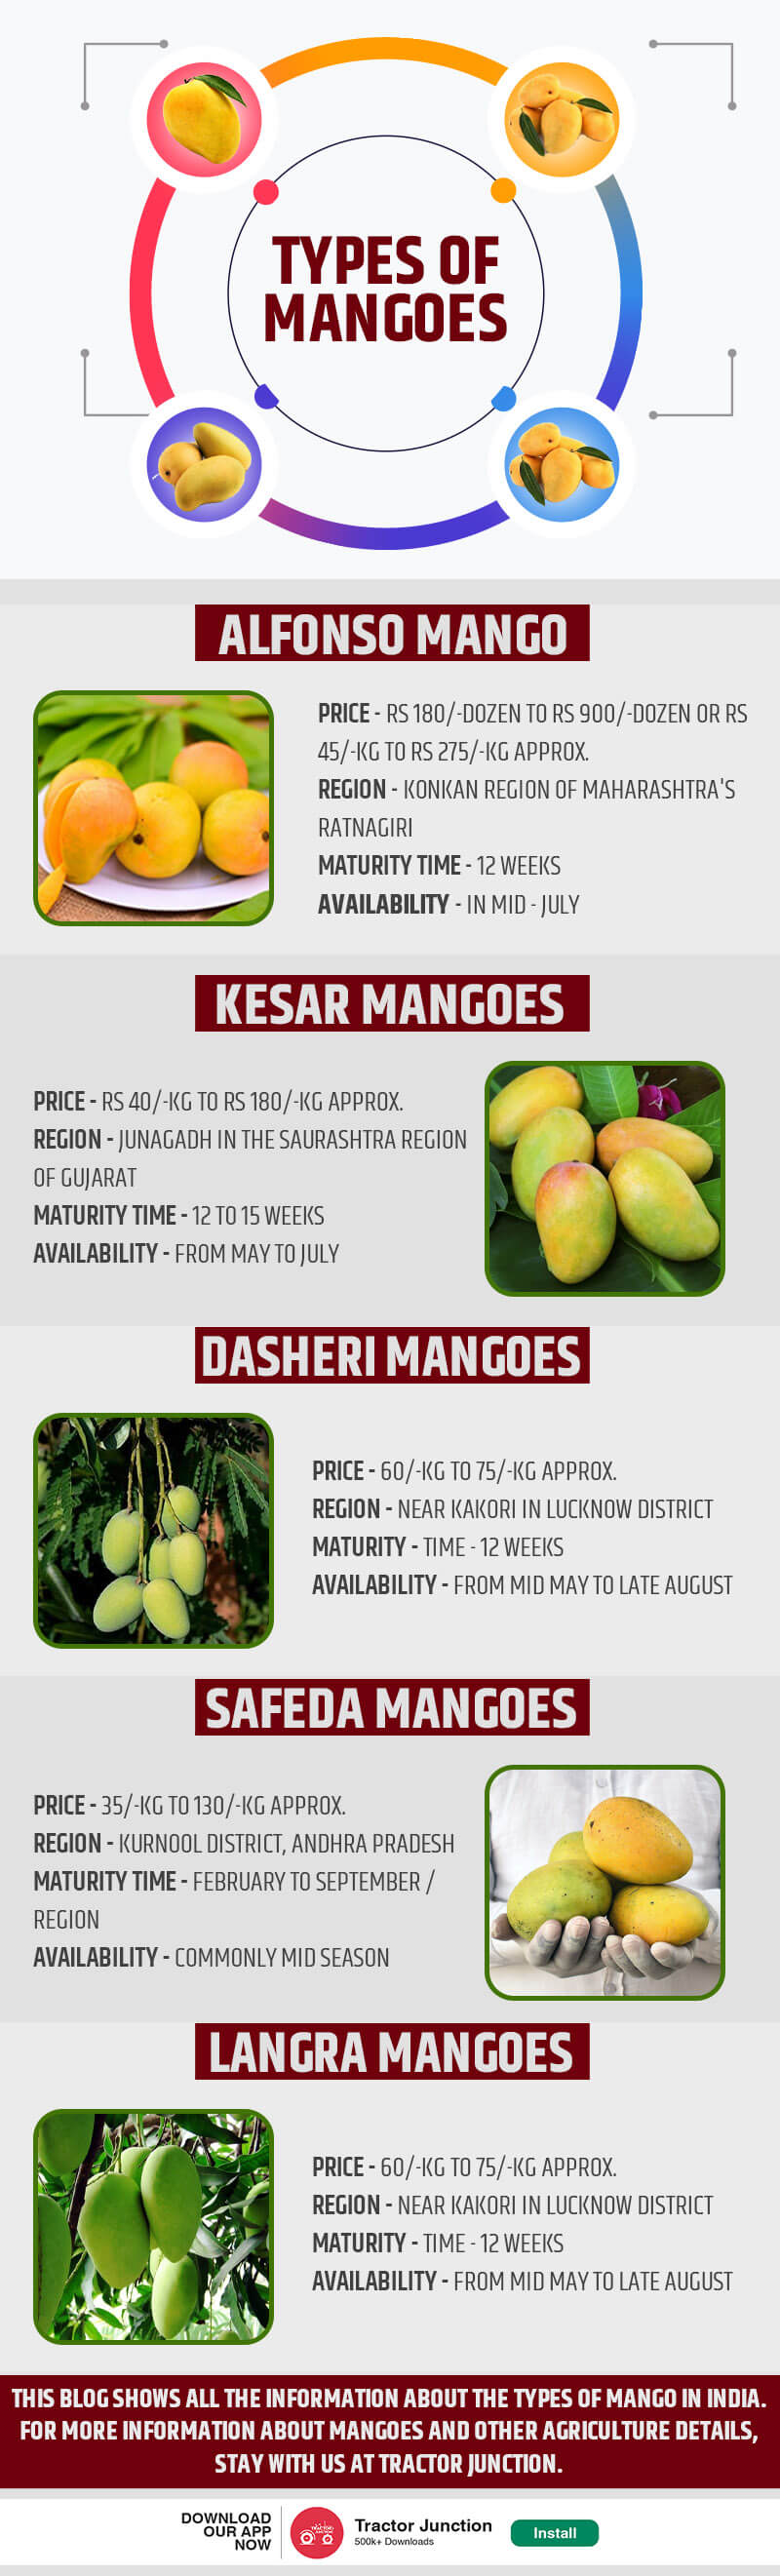 Mango Farming in India infogiraphic